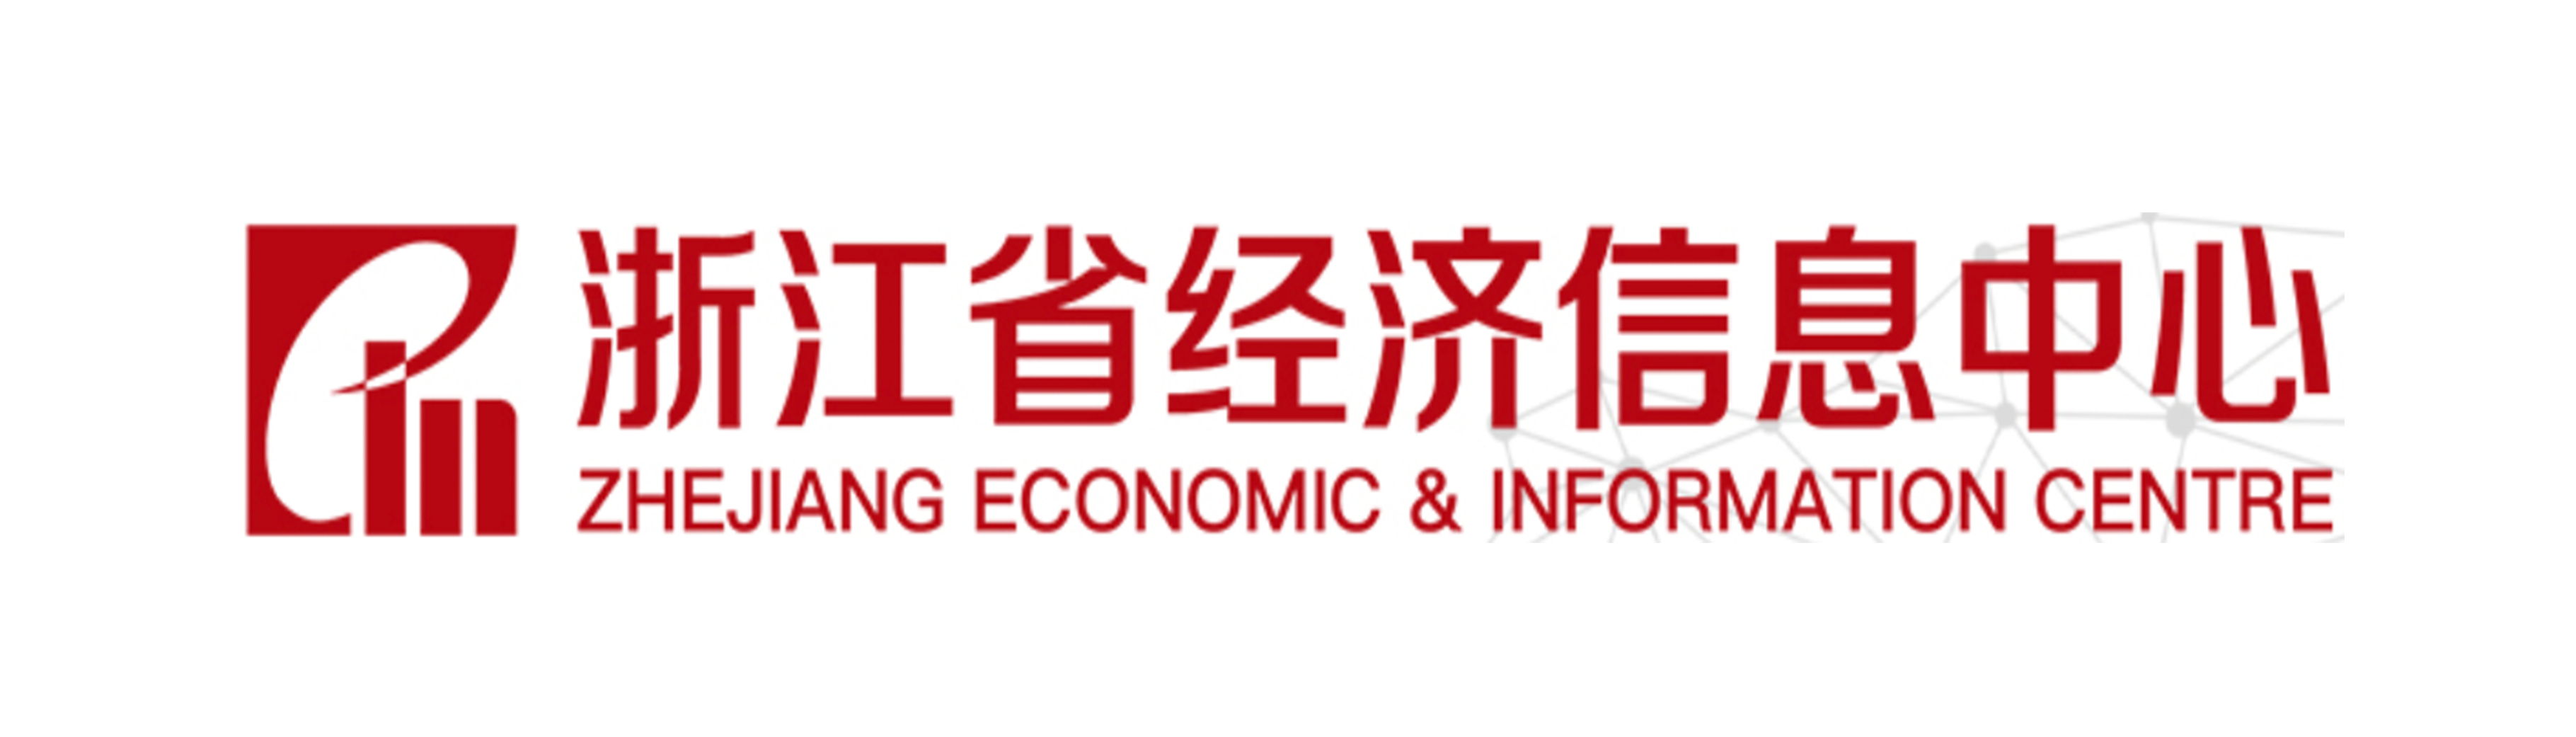 浙江省经济信息中心